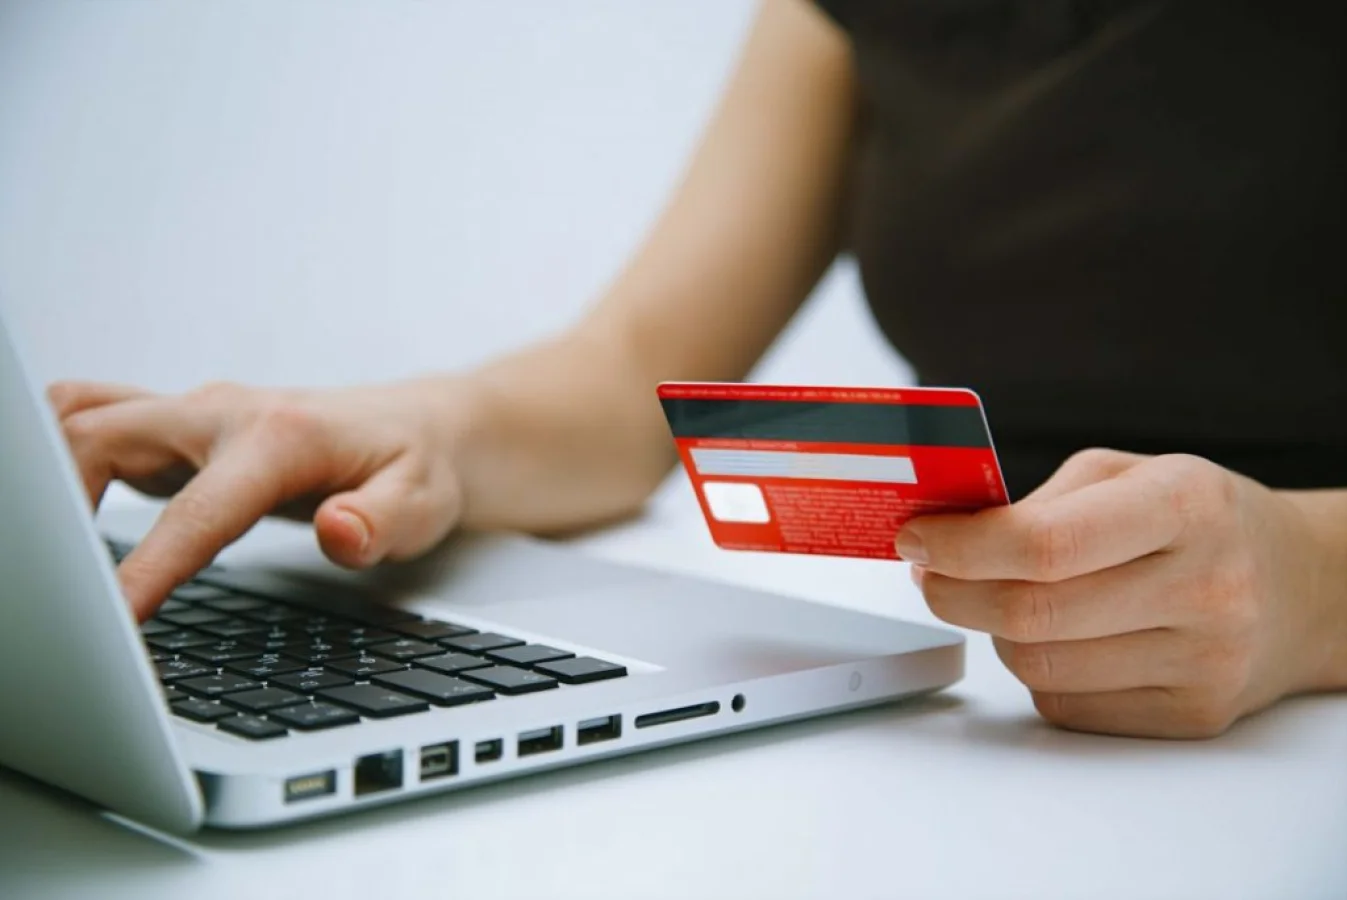 Kredi kartlarında alışverişte kart numarası ve şifre girme devri bitiyor